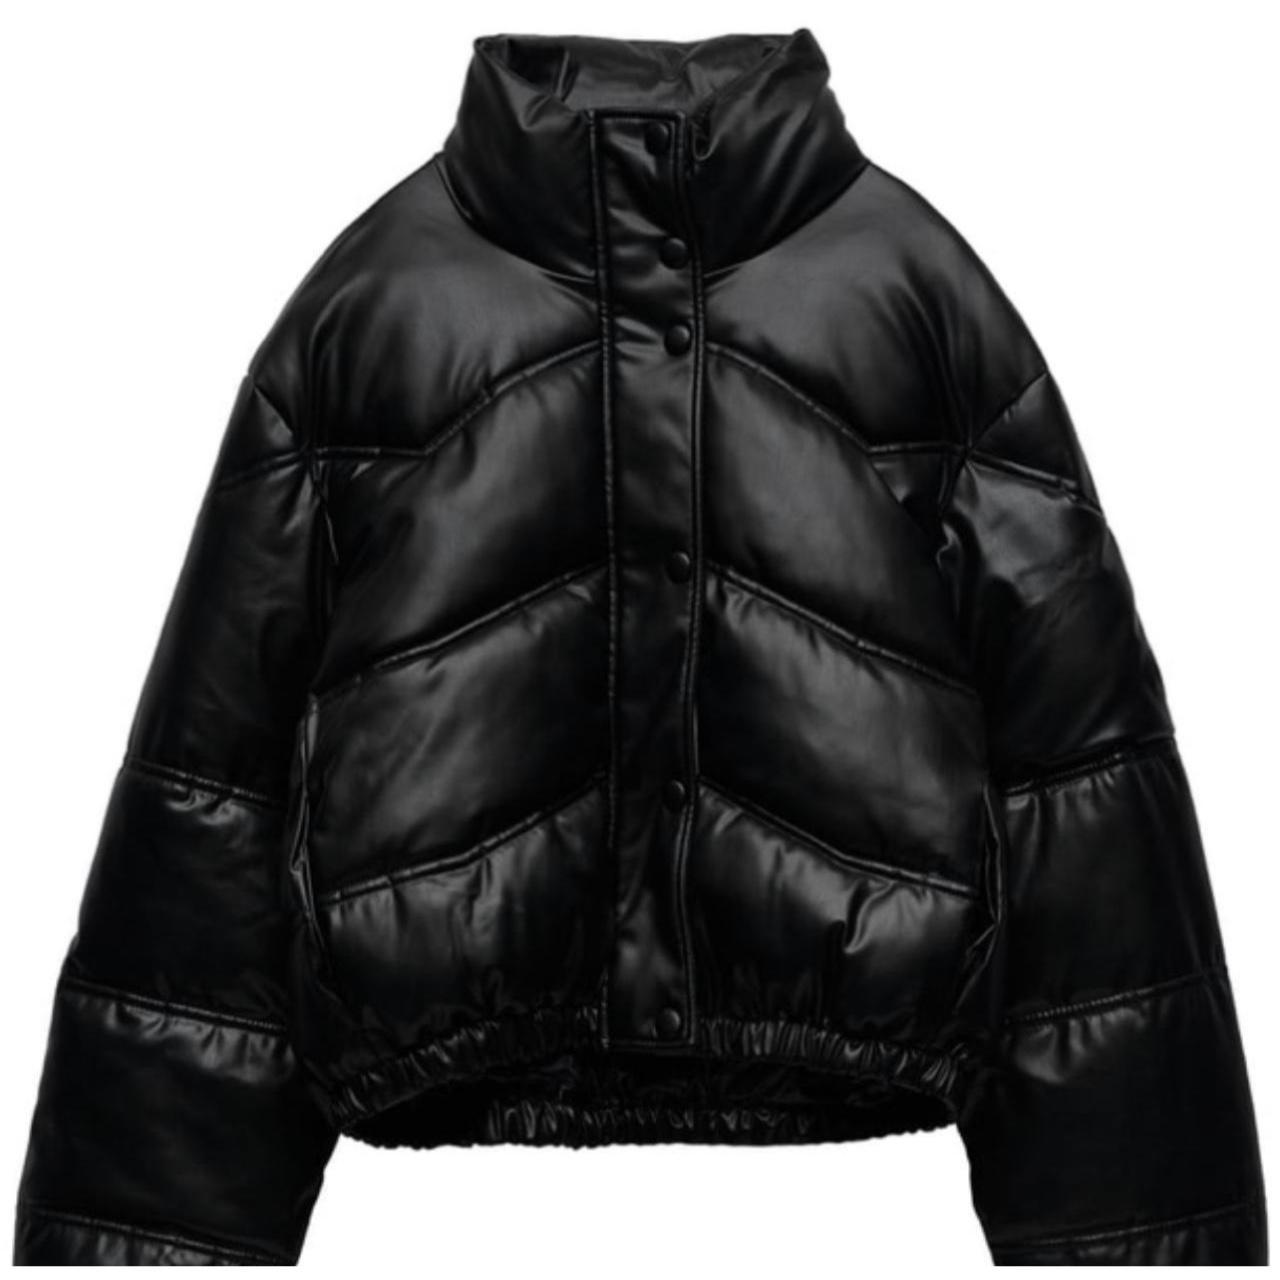 Zara faux leather puffer jacket worn once - Depop